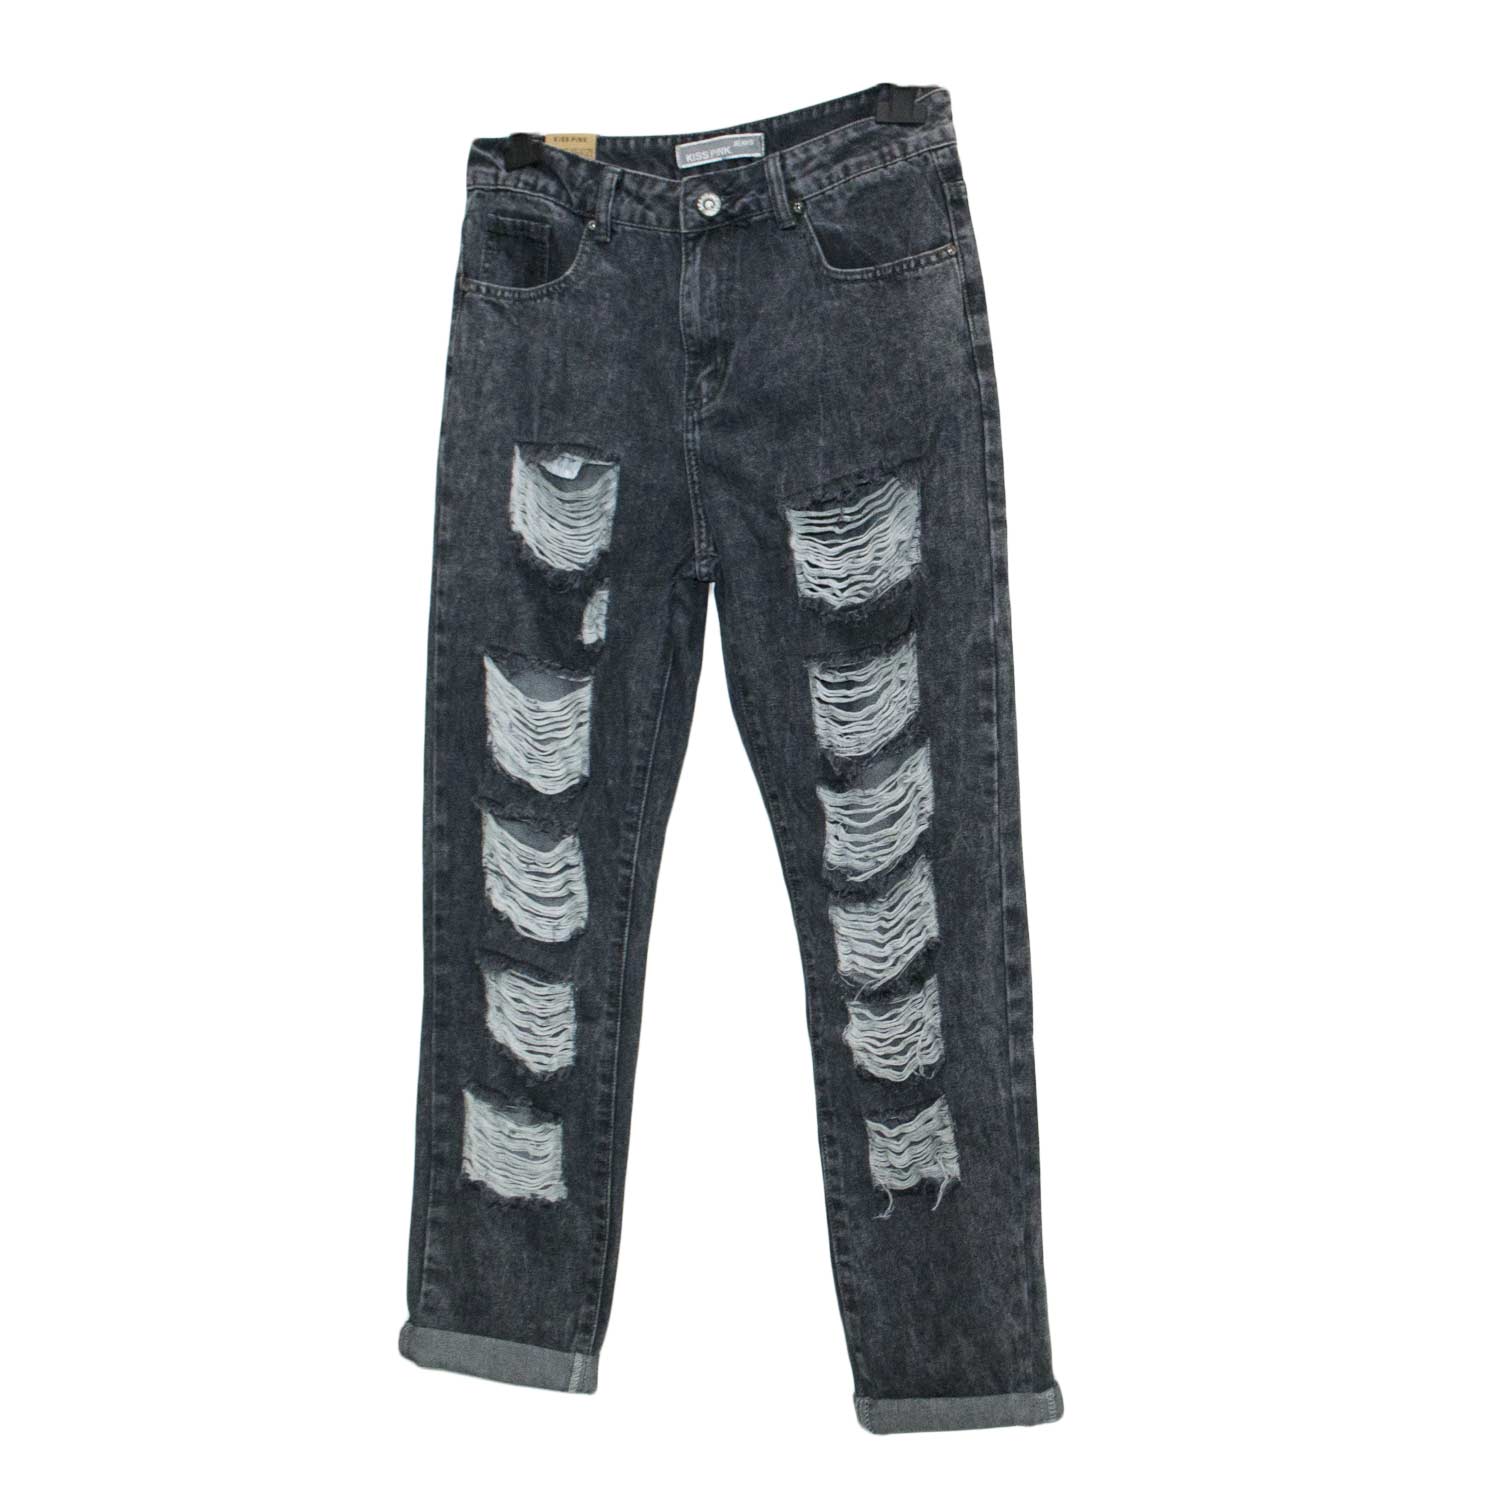 Jeans Mon Fit modello cropped con strappi grigio.